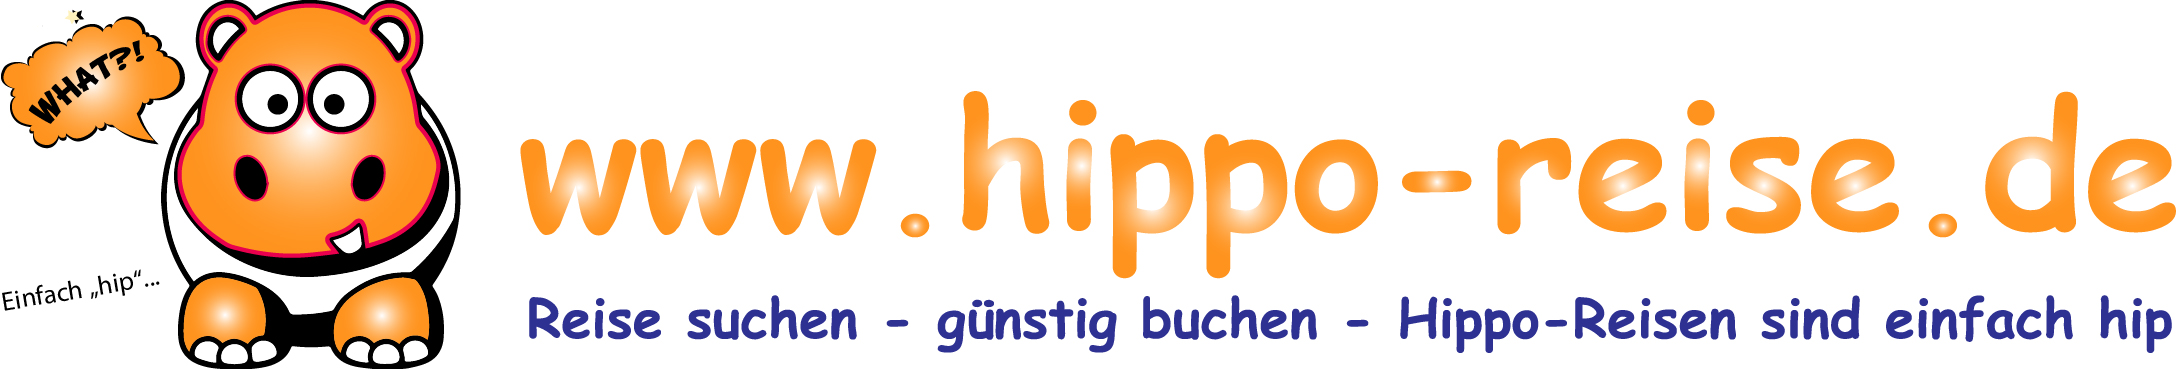 Hippo-Reiseshop